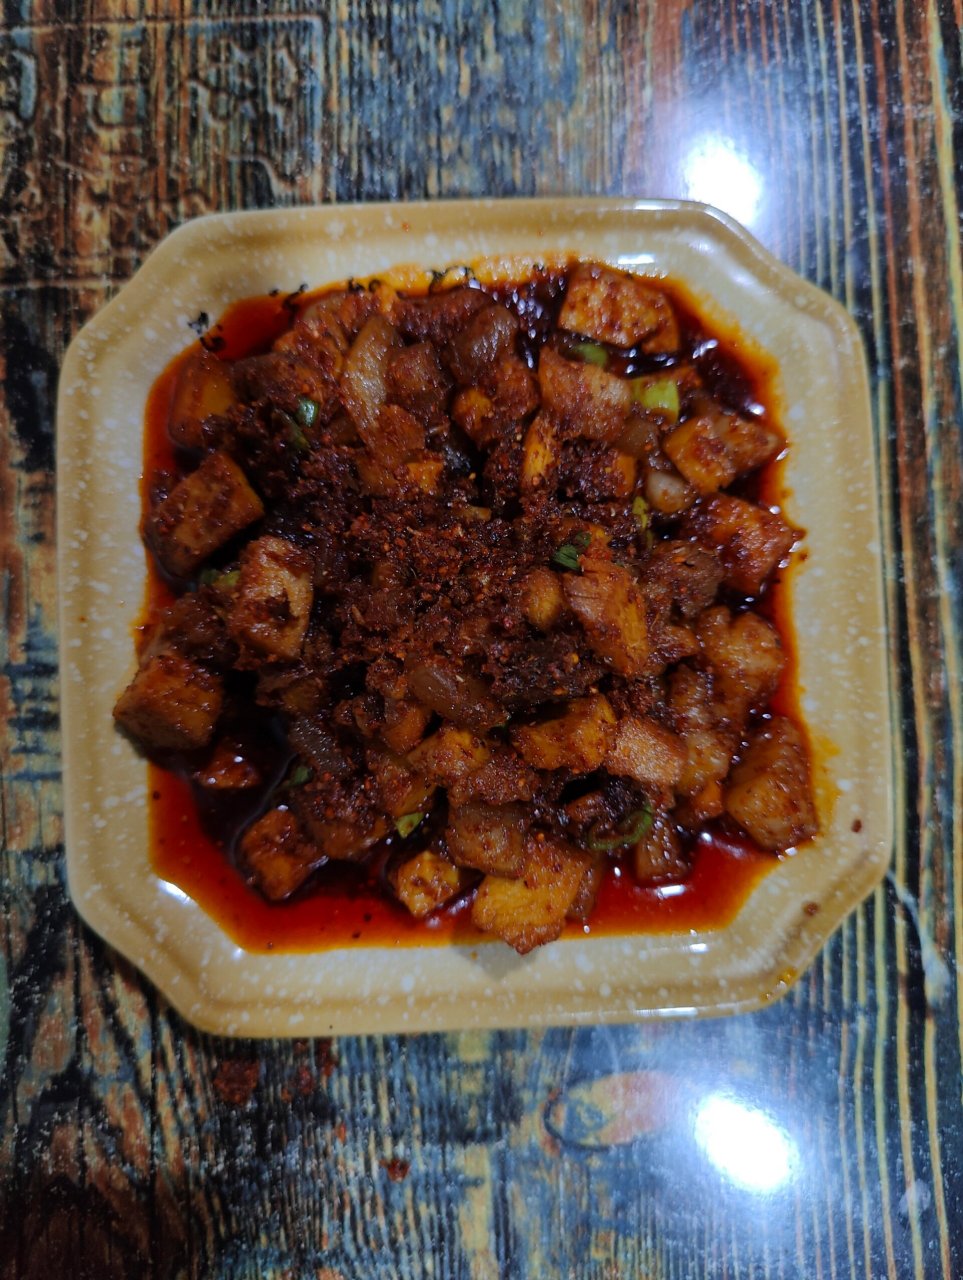 洛川美食 来洛川必不可少的两道菜,肉辣子和煎豆腐